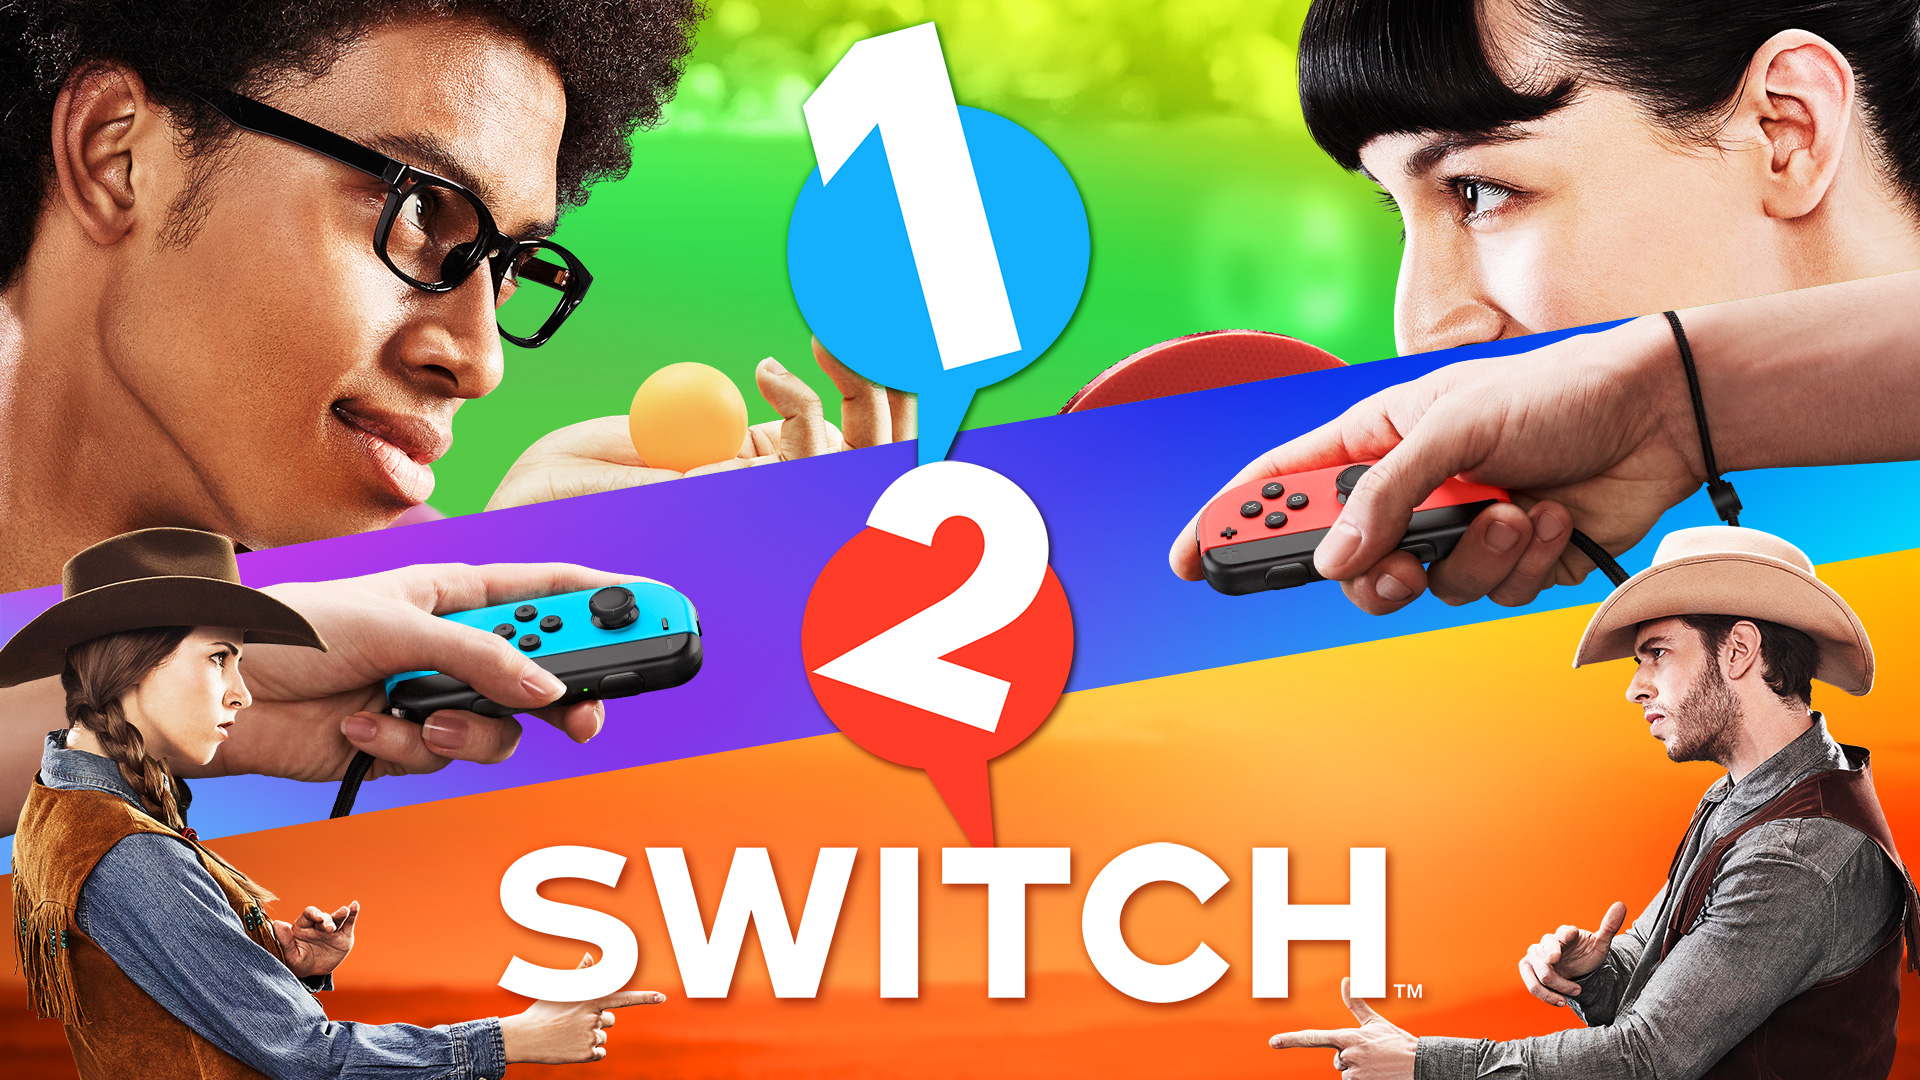 1-2-Switch™